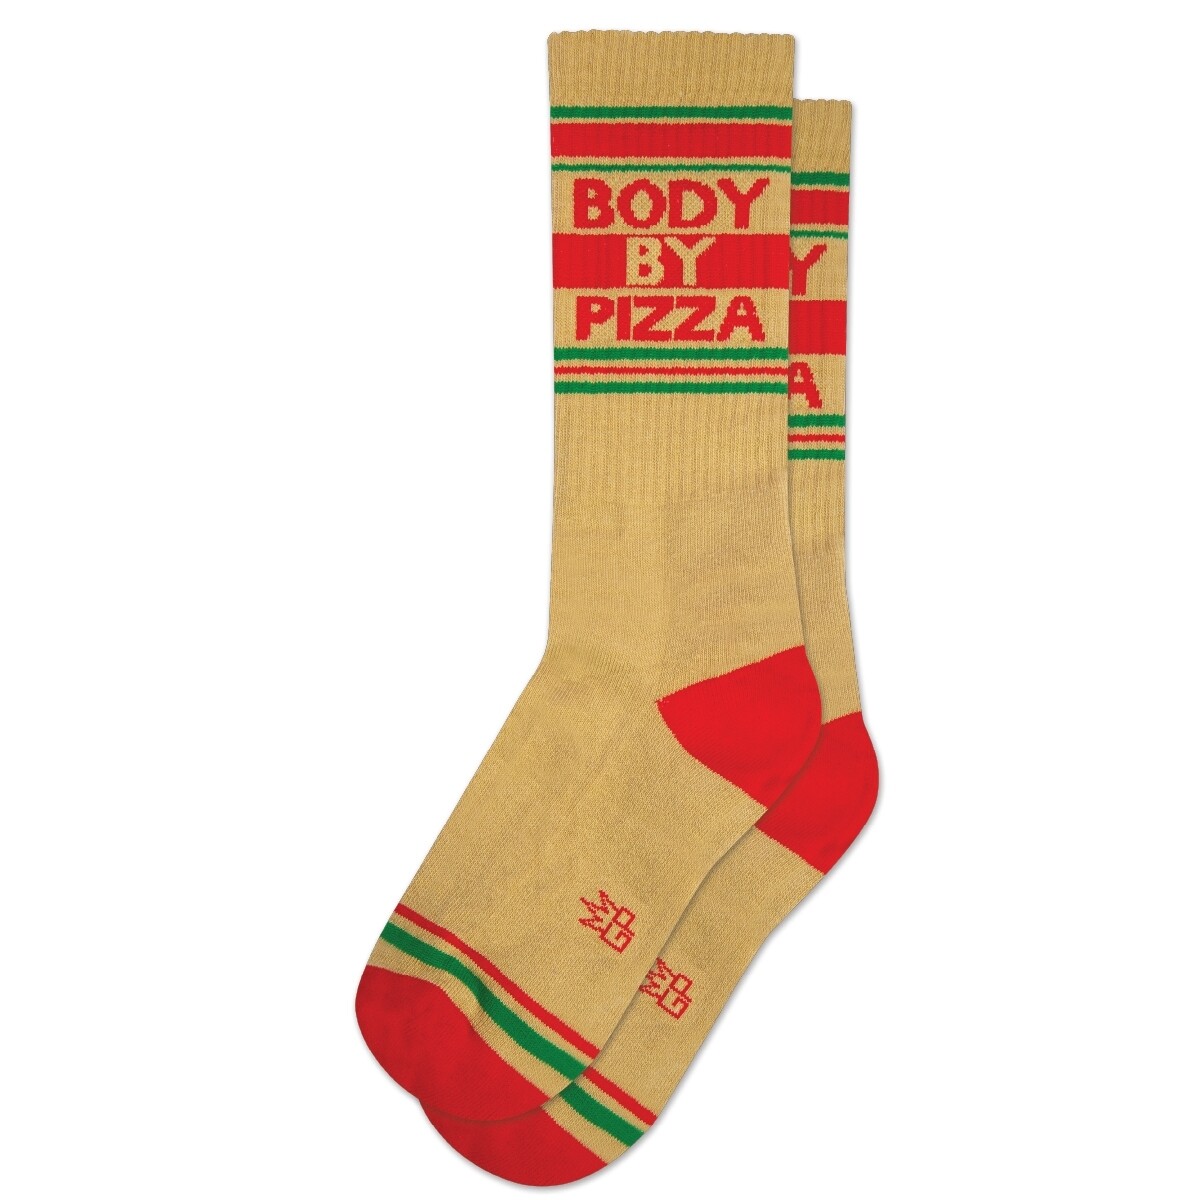 Body Pizza Socks